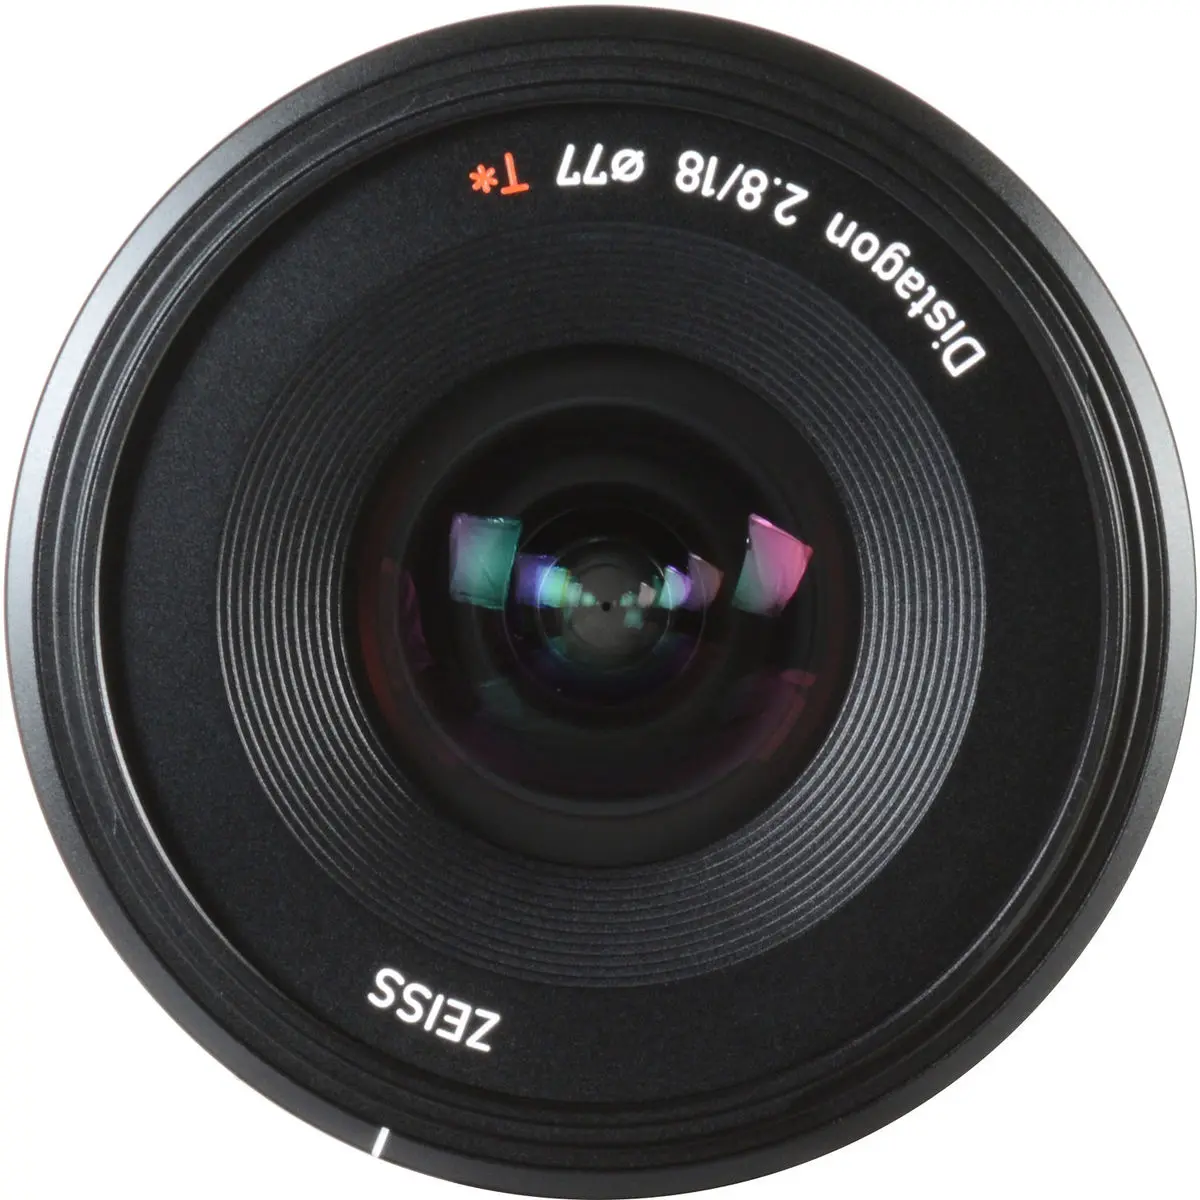 11. Carl Zeiss Batis 2.8/18 (E-Mount) Lens